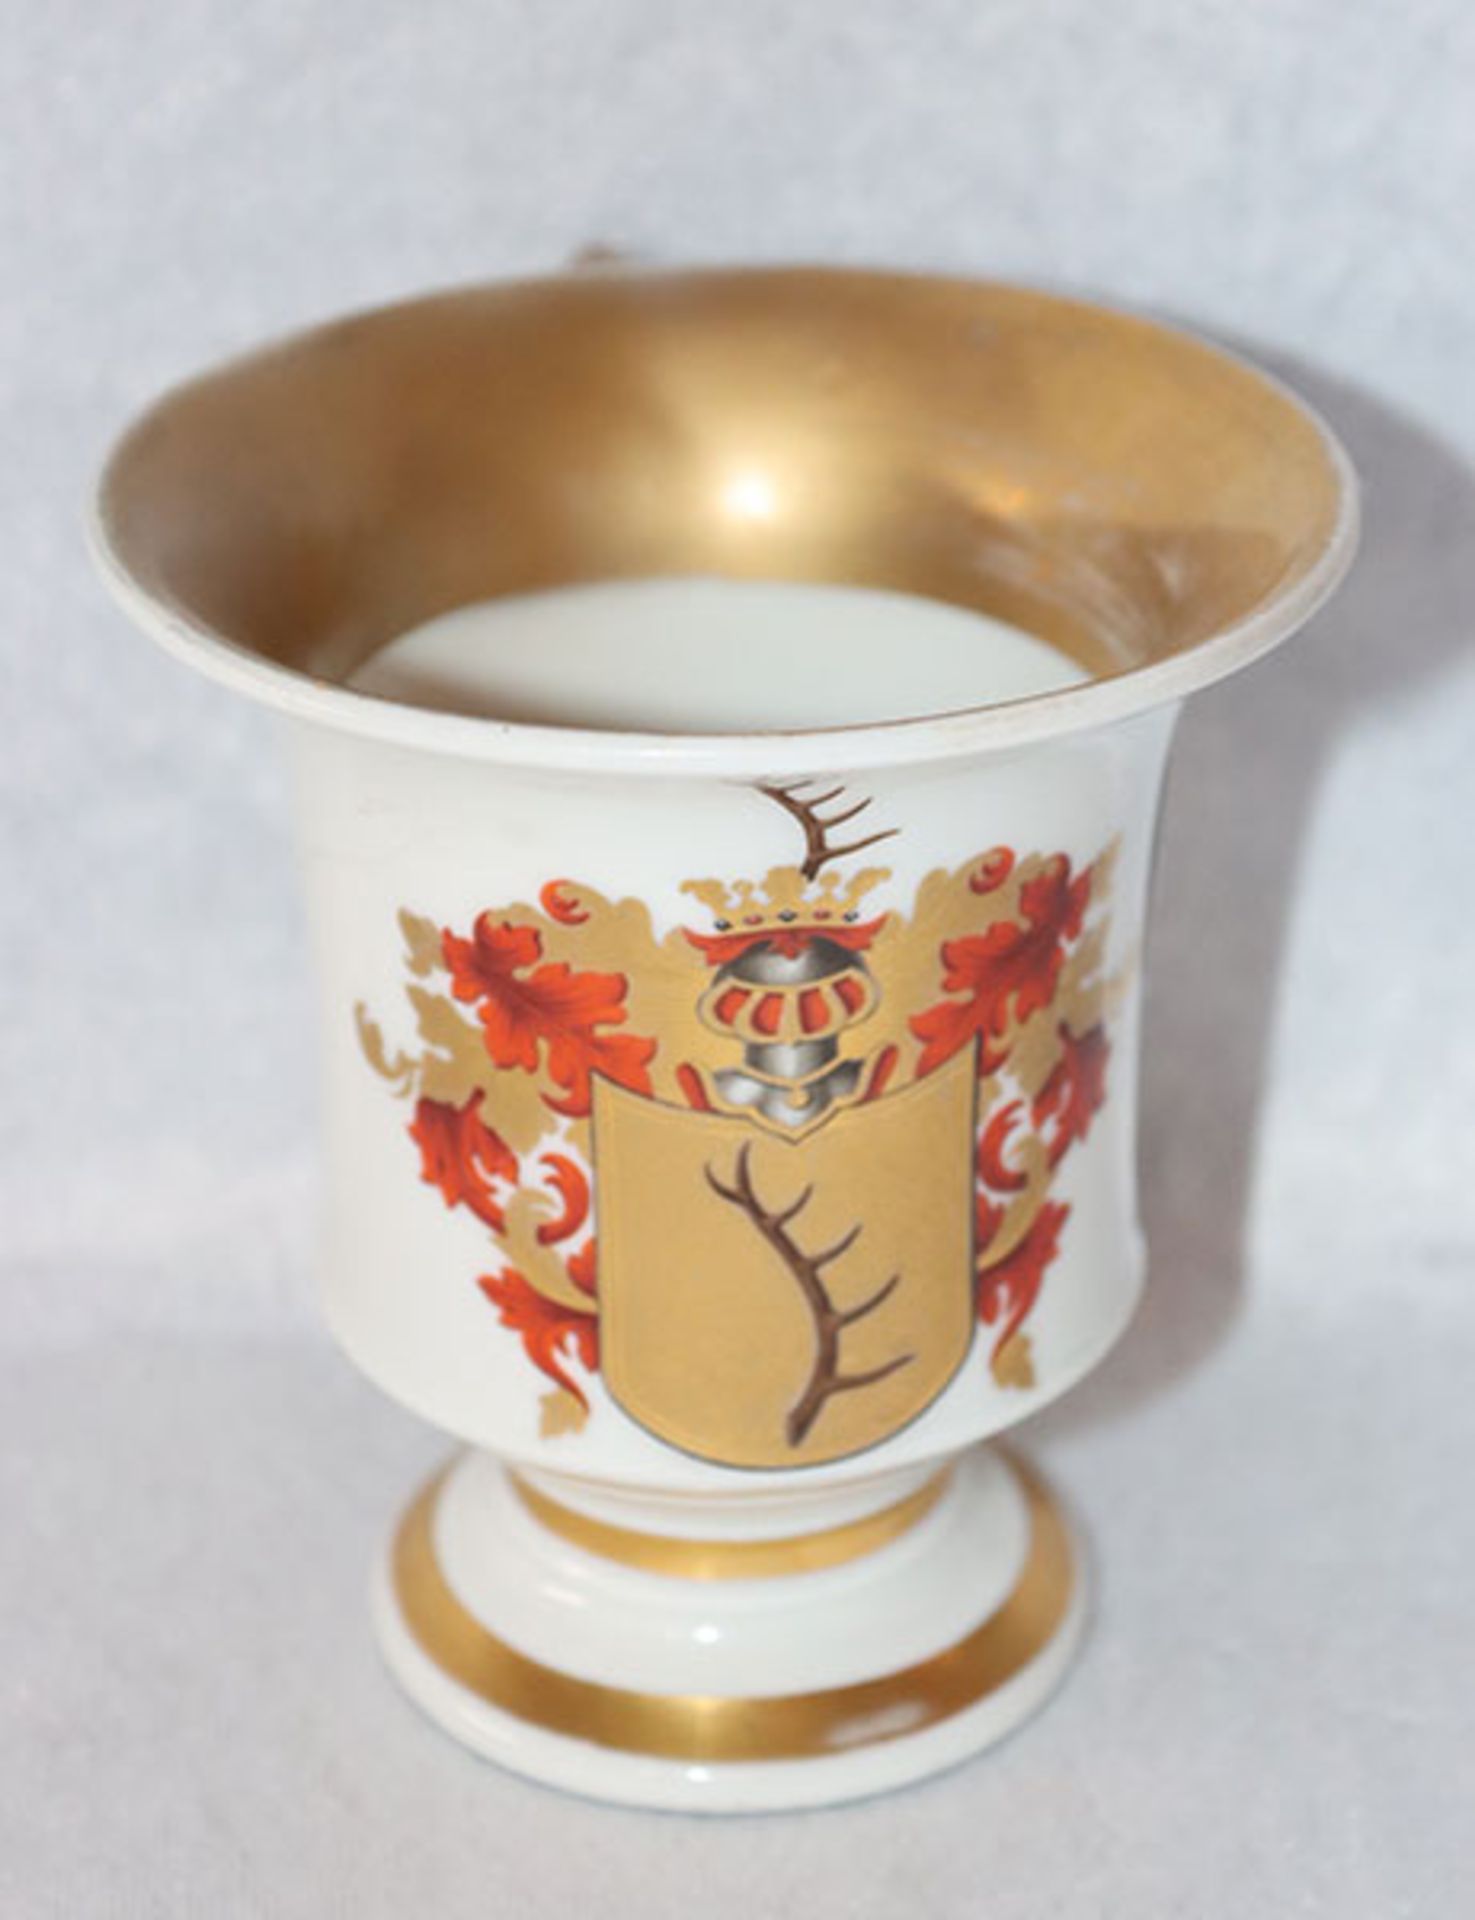 Porzellan Tasse mit Wappendekor, bez. Gustav v. Biberstein, restauriert und berieben, H 10 cm